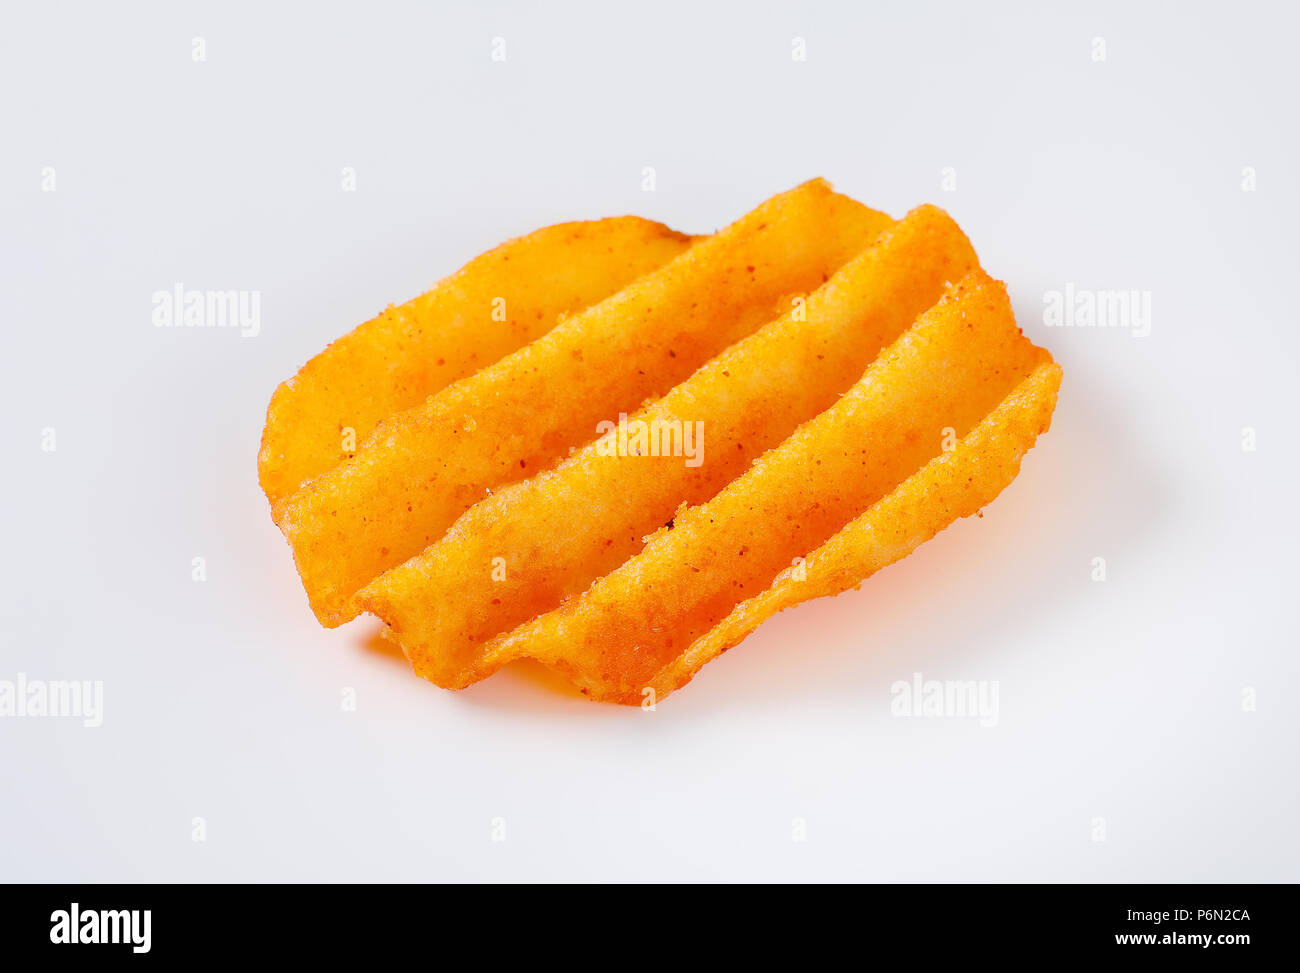 Fried potato chip sur fond blanc Banque D'Images